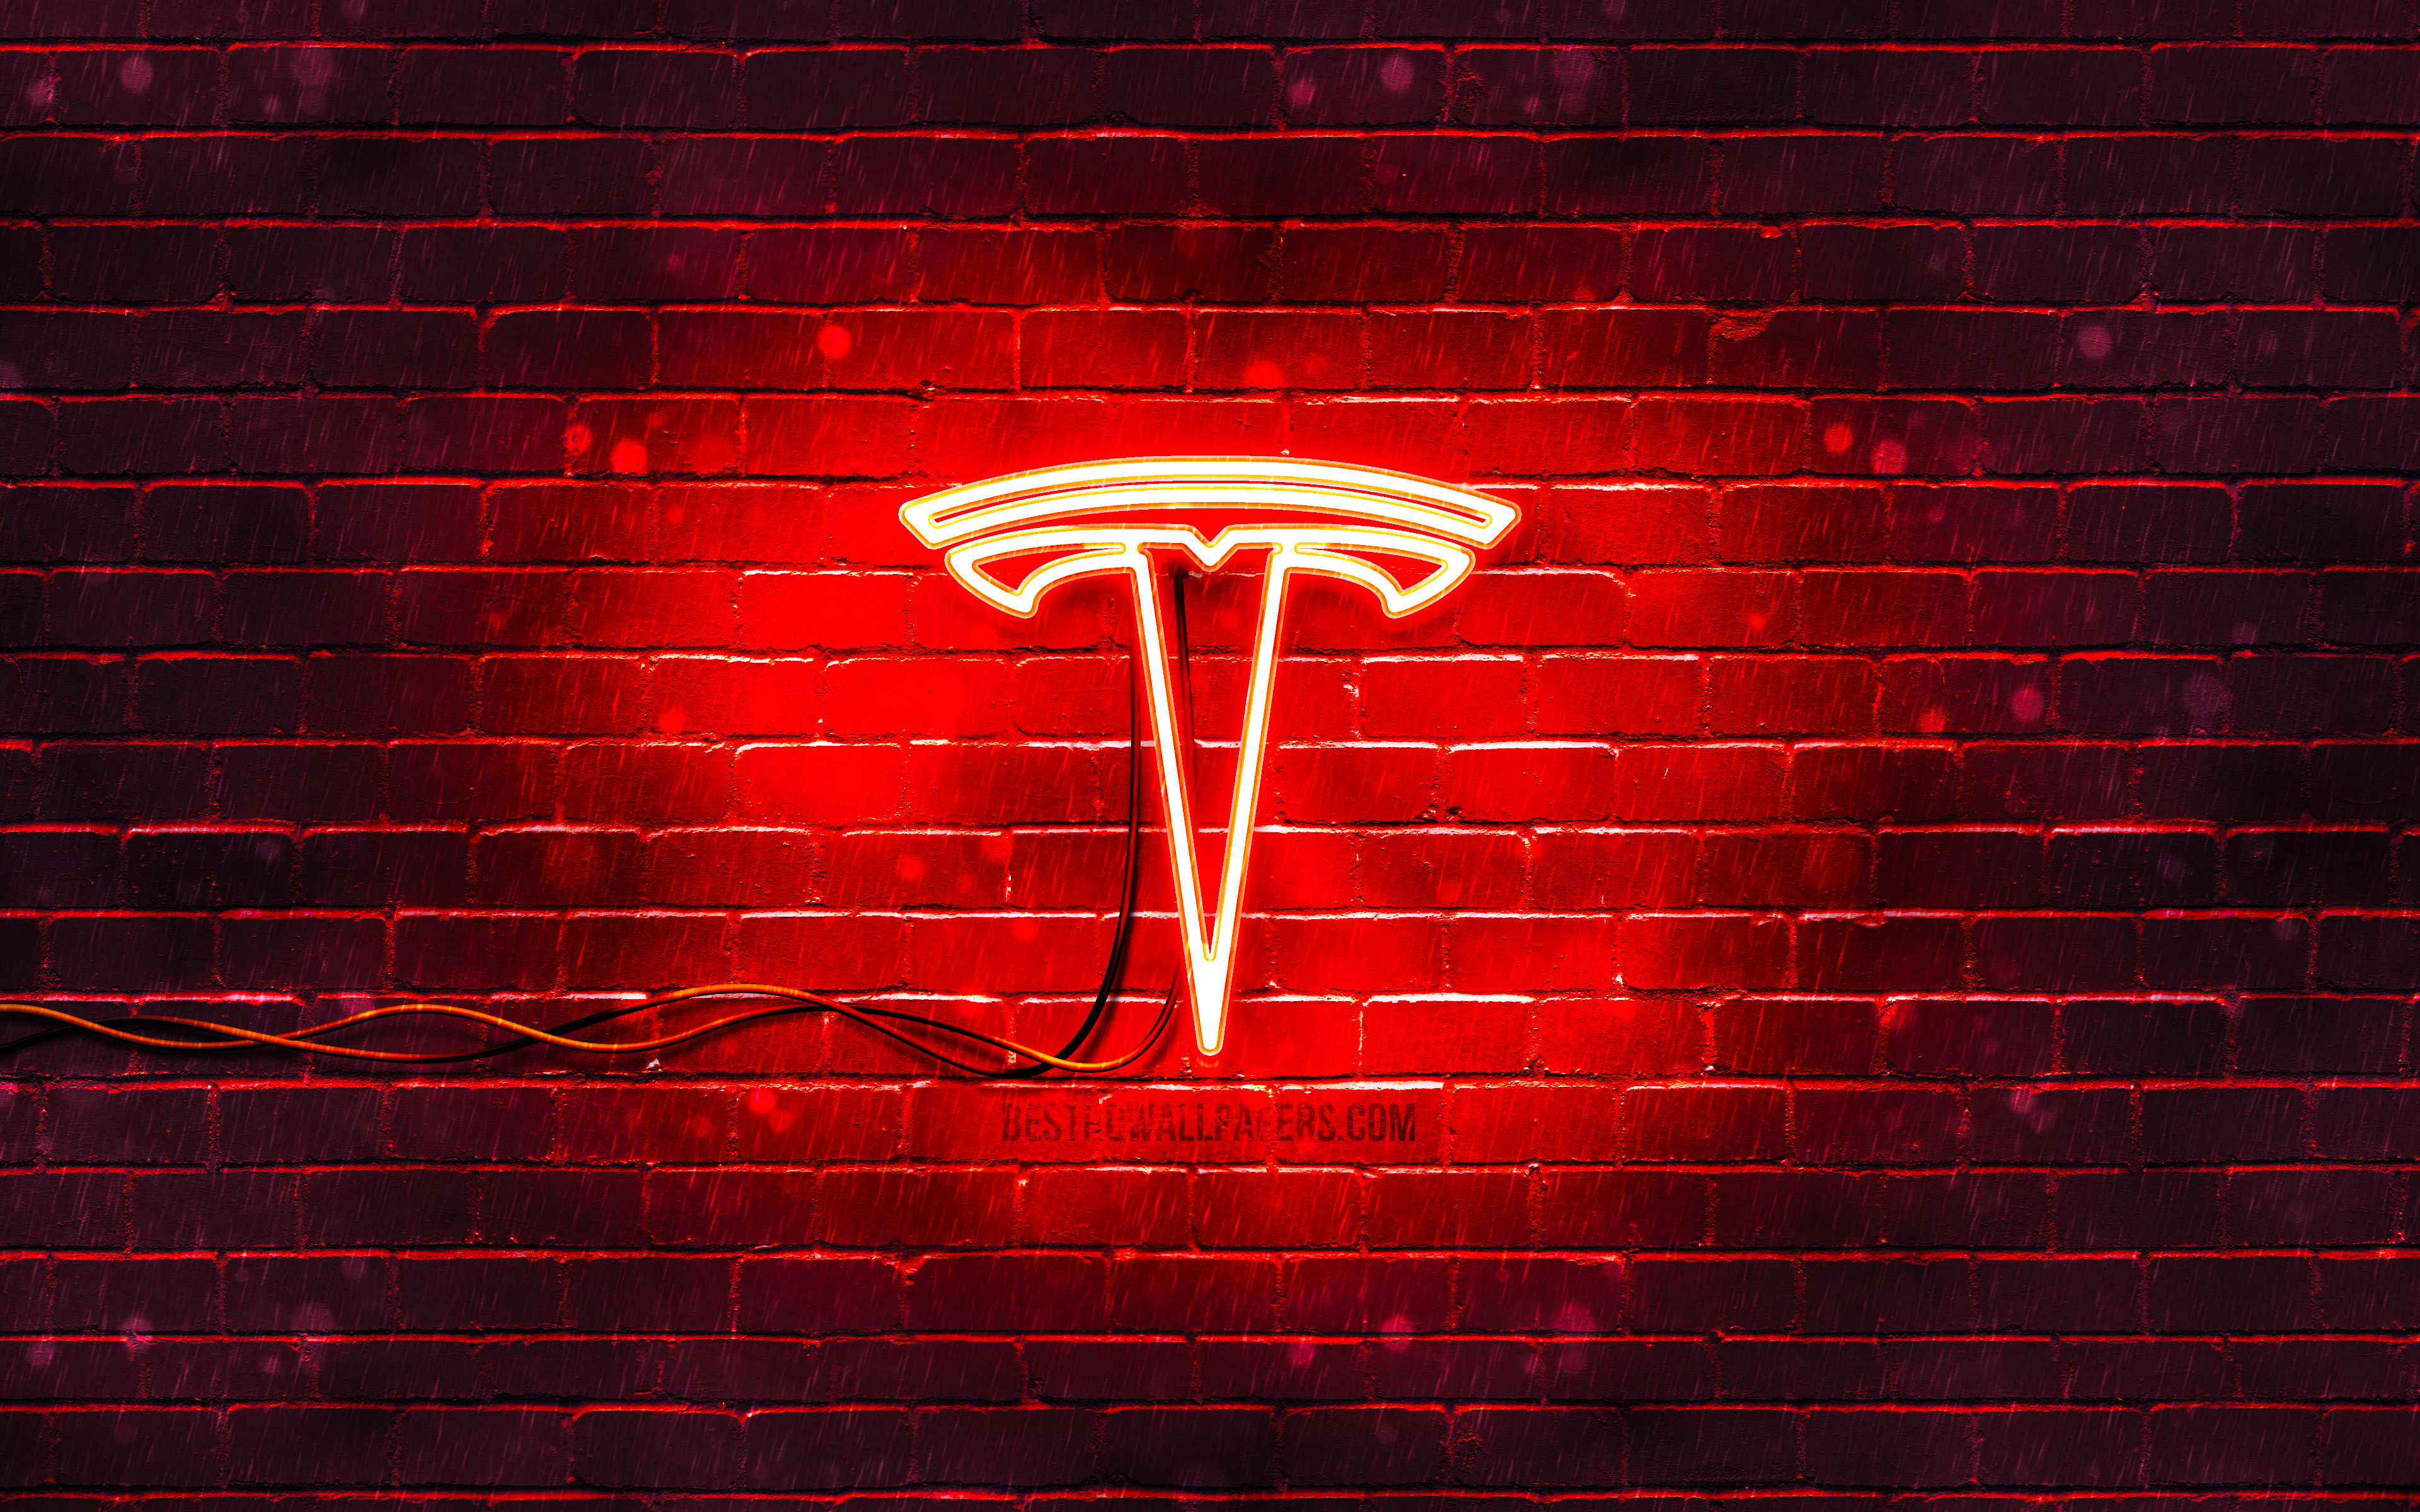 Download wallpapers Tesla red logo, 4k, red brickwall, Tesla logo, cars bra...